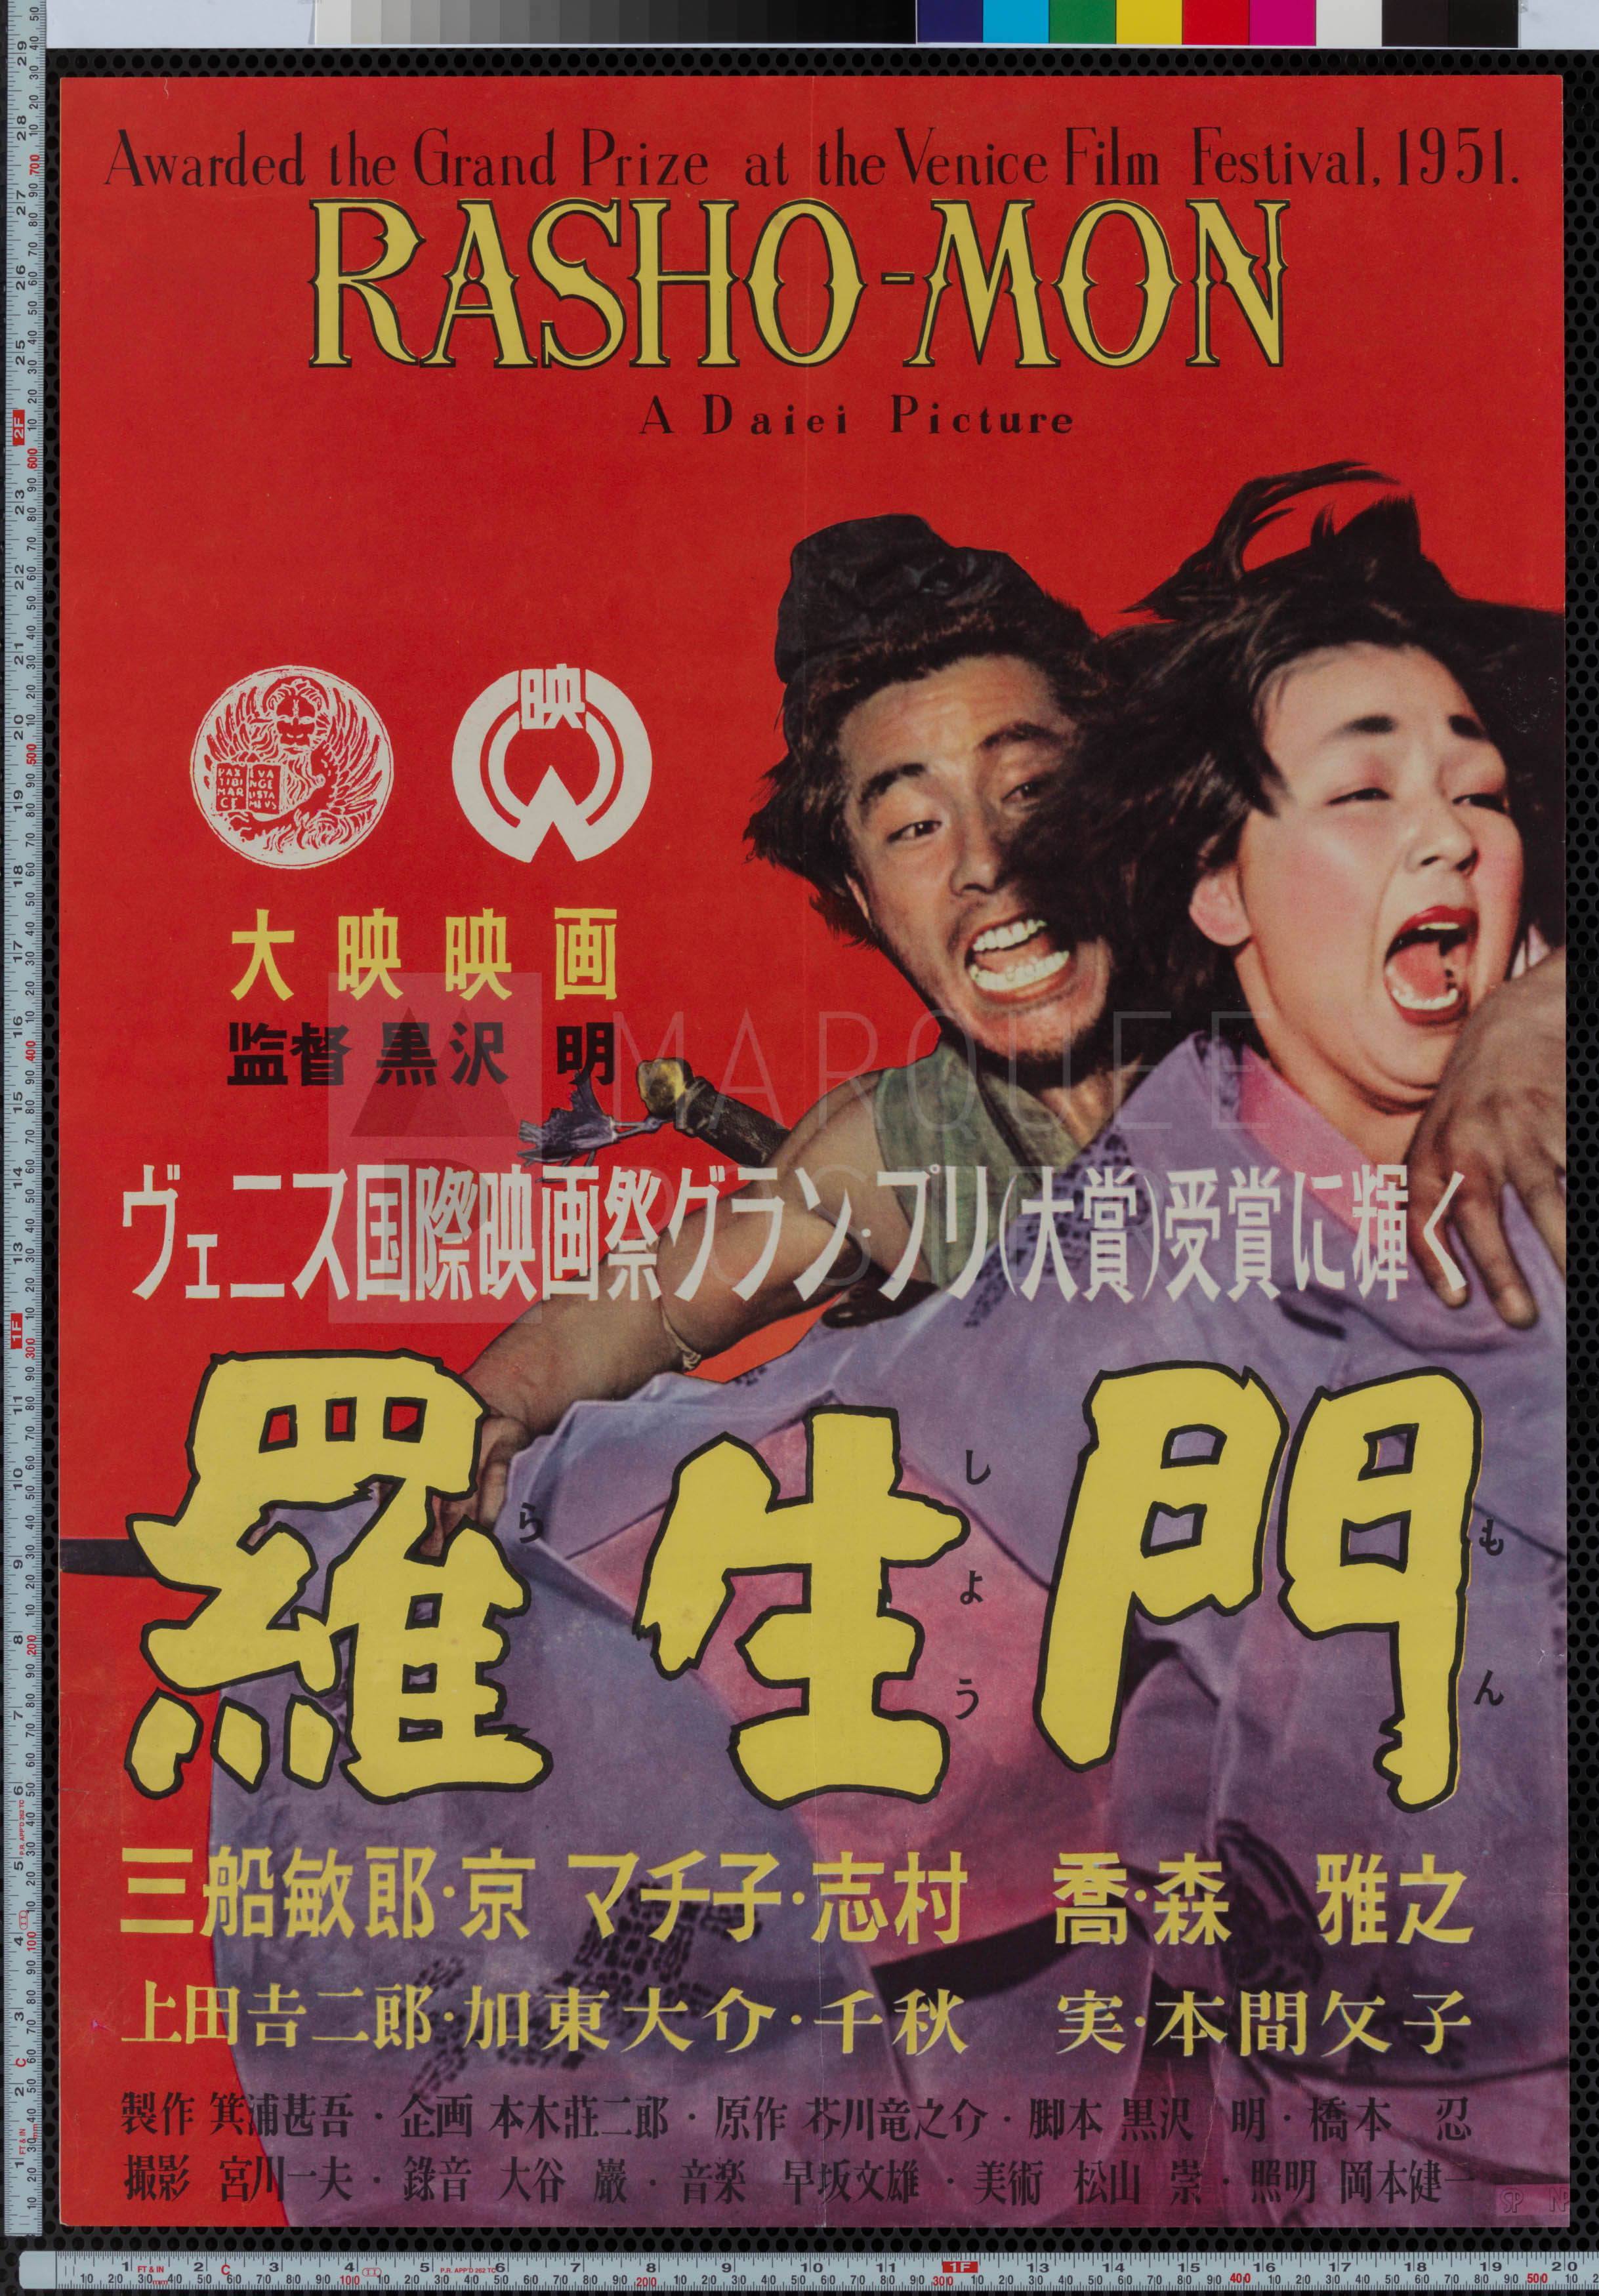 3-rashomon-japanese-awards-style-japanese-b2-1951-02